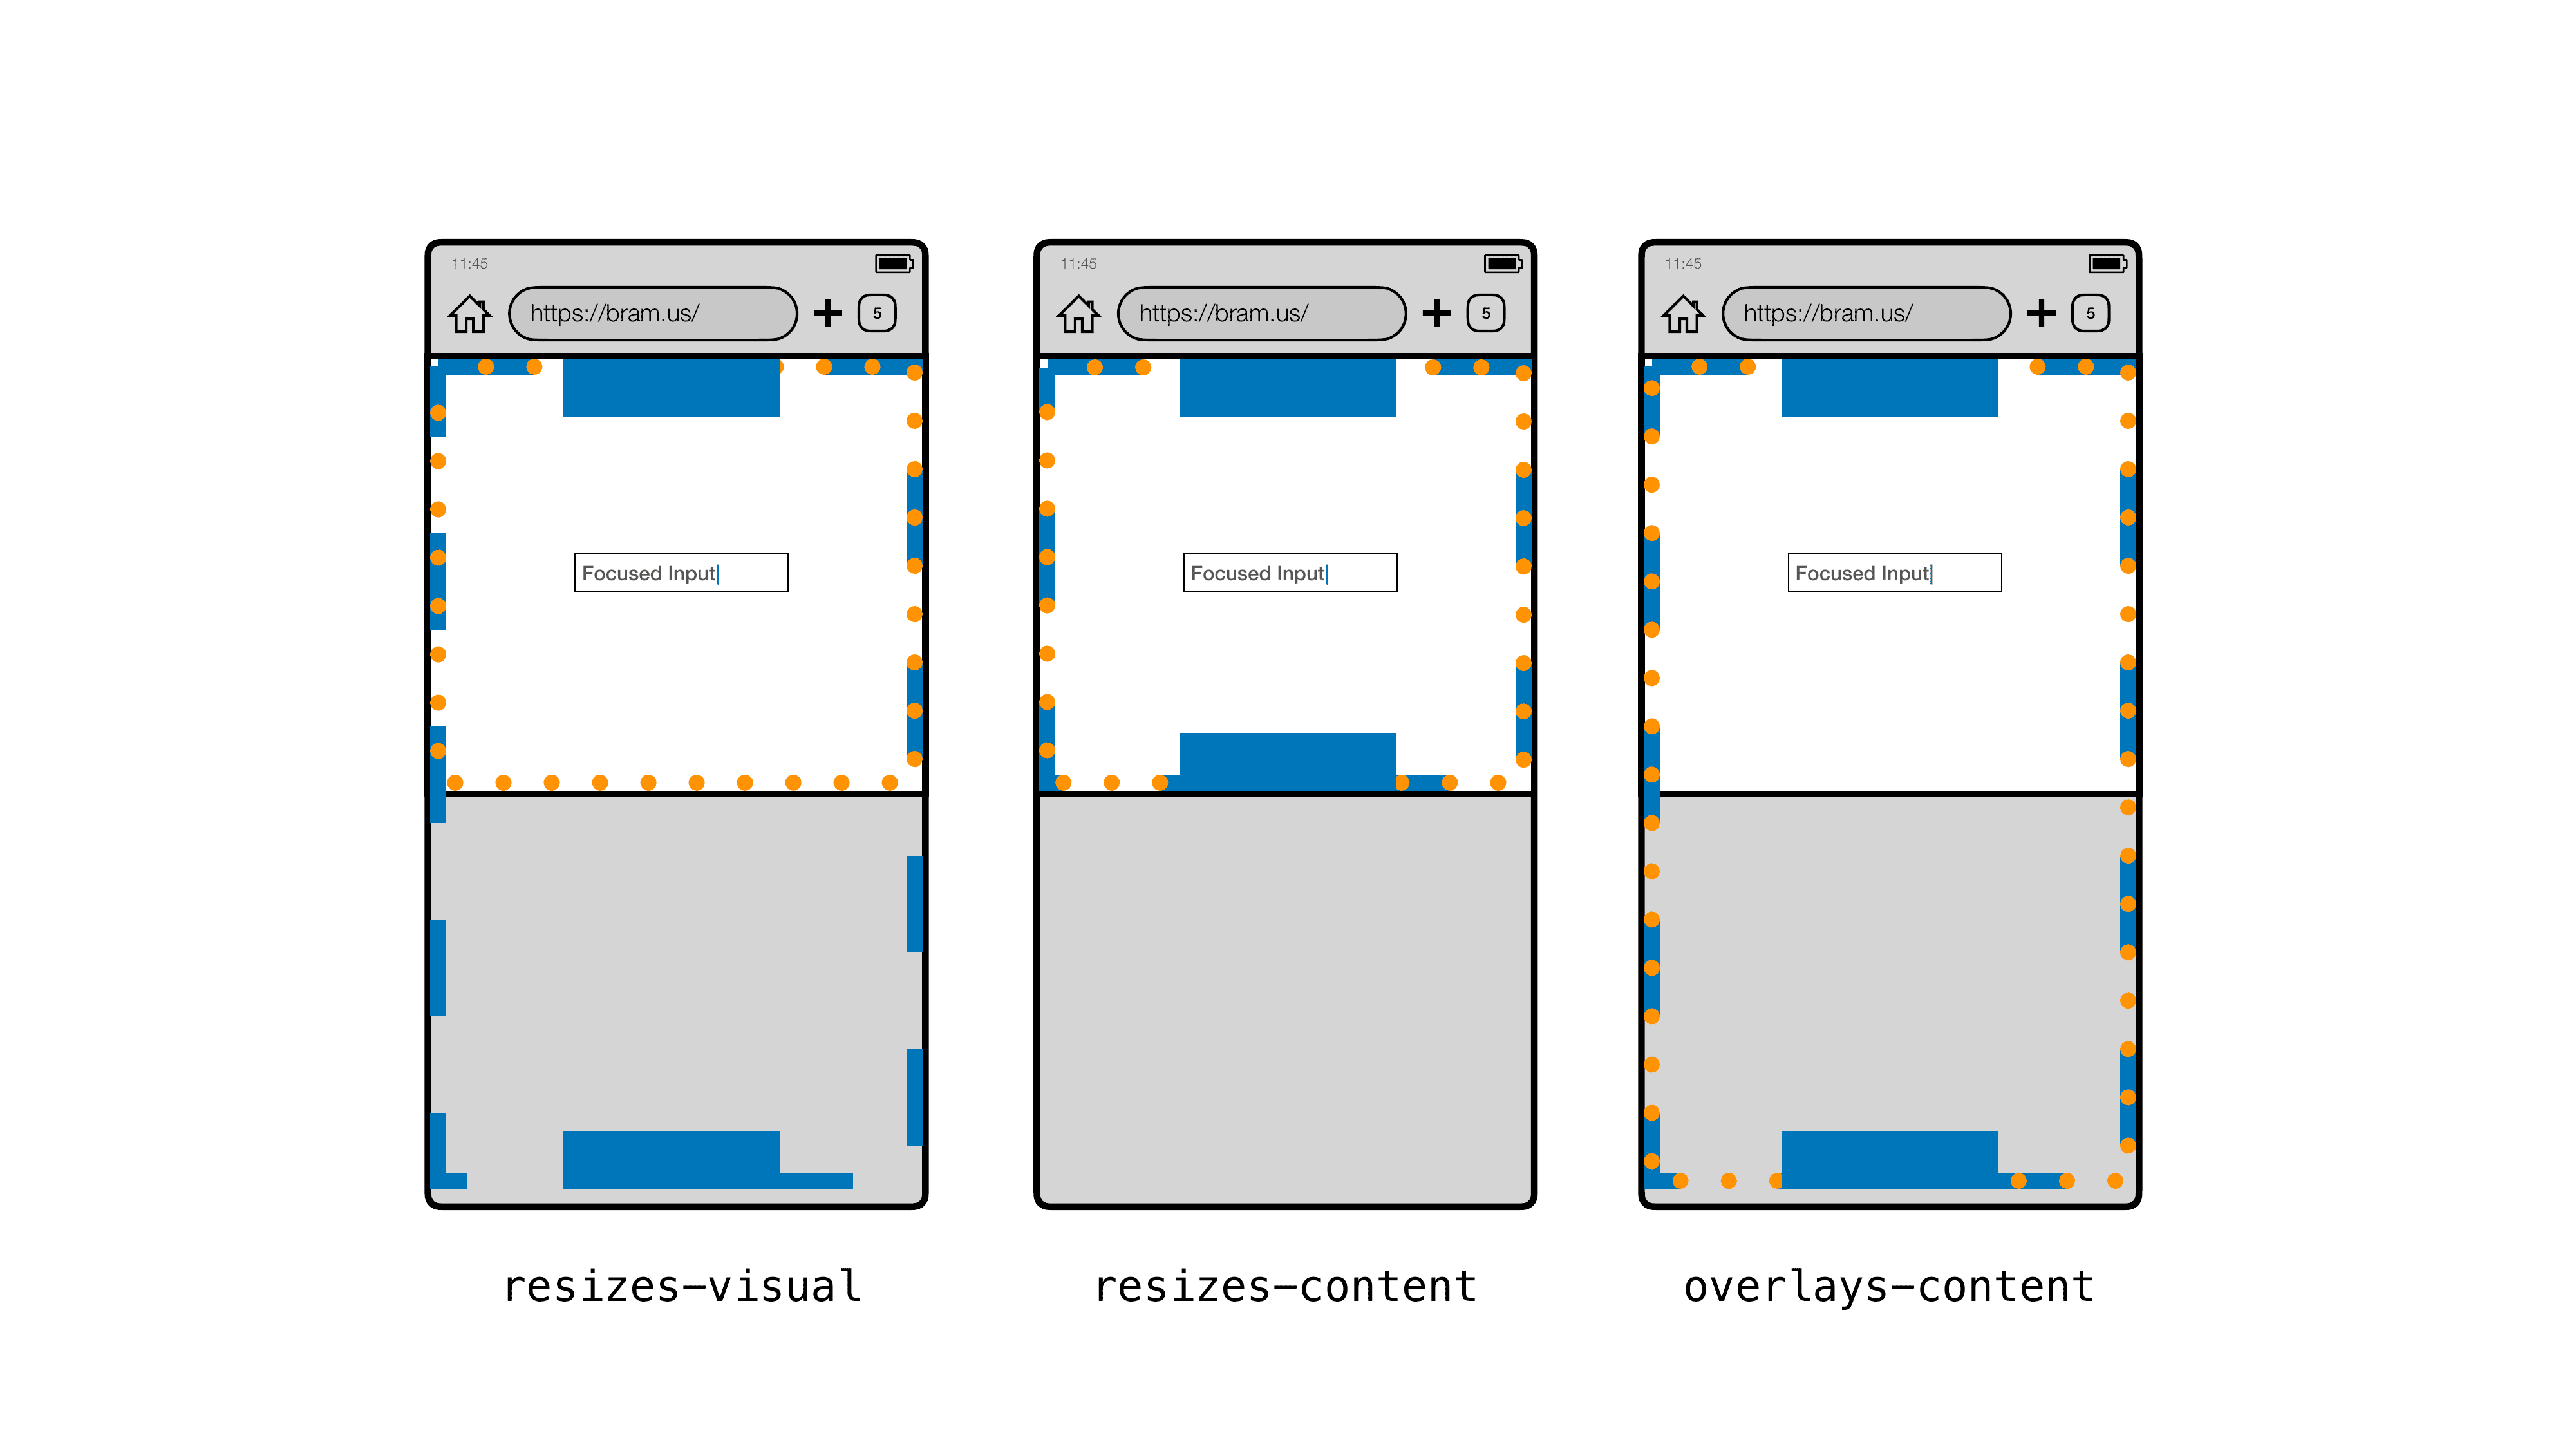 השוואה חזותית של כל שלושת הערכים בגרסה 108 של Chrome ב-Android. משמאל לימין: שינוי גודל של תוכן חזותי, שינוי גודל של תוכן ושכבות-על של תוכן.